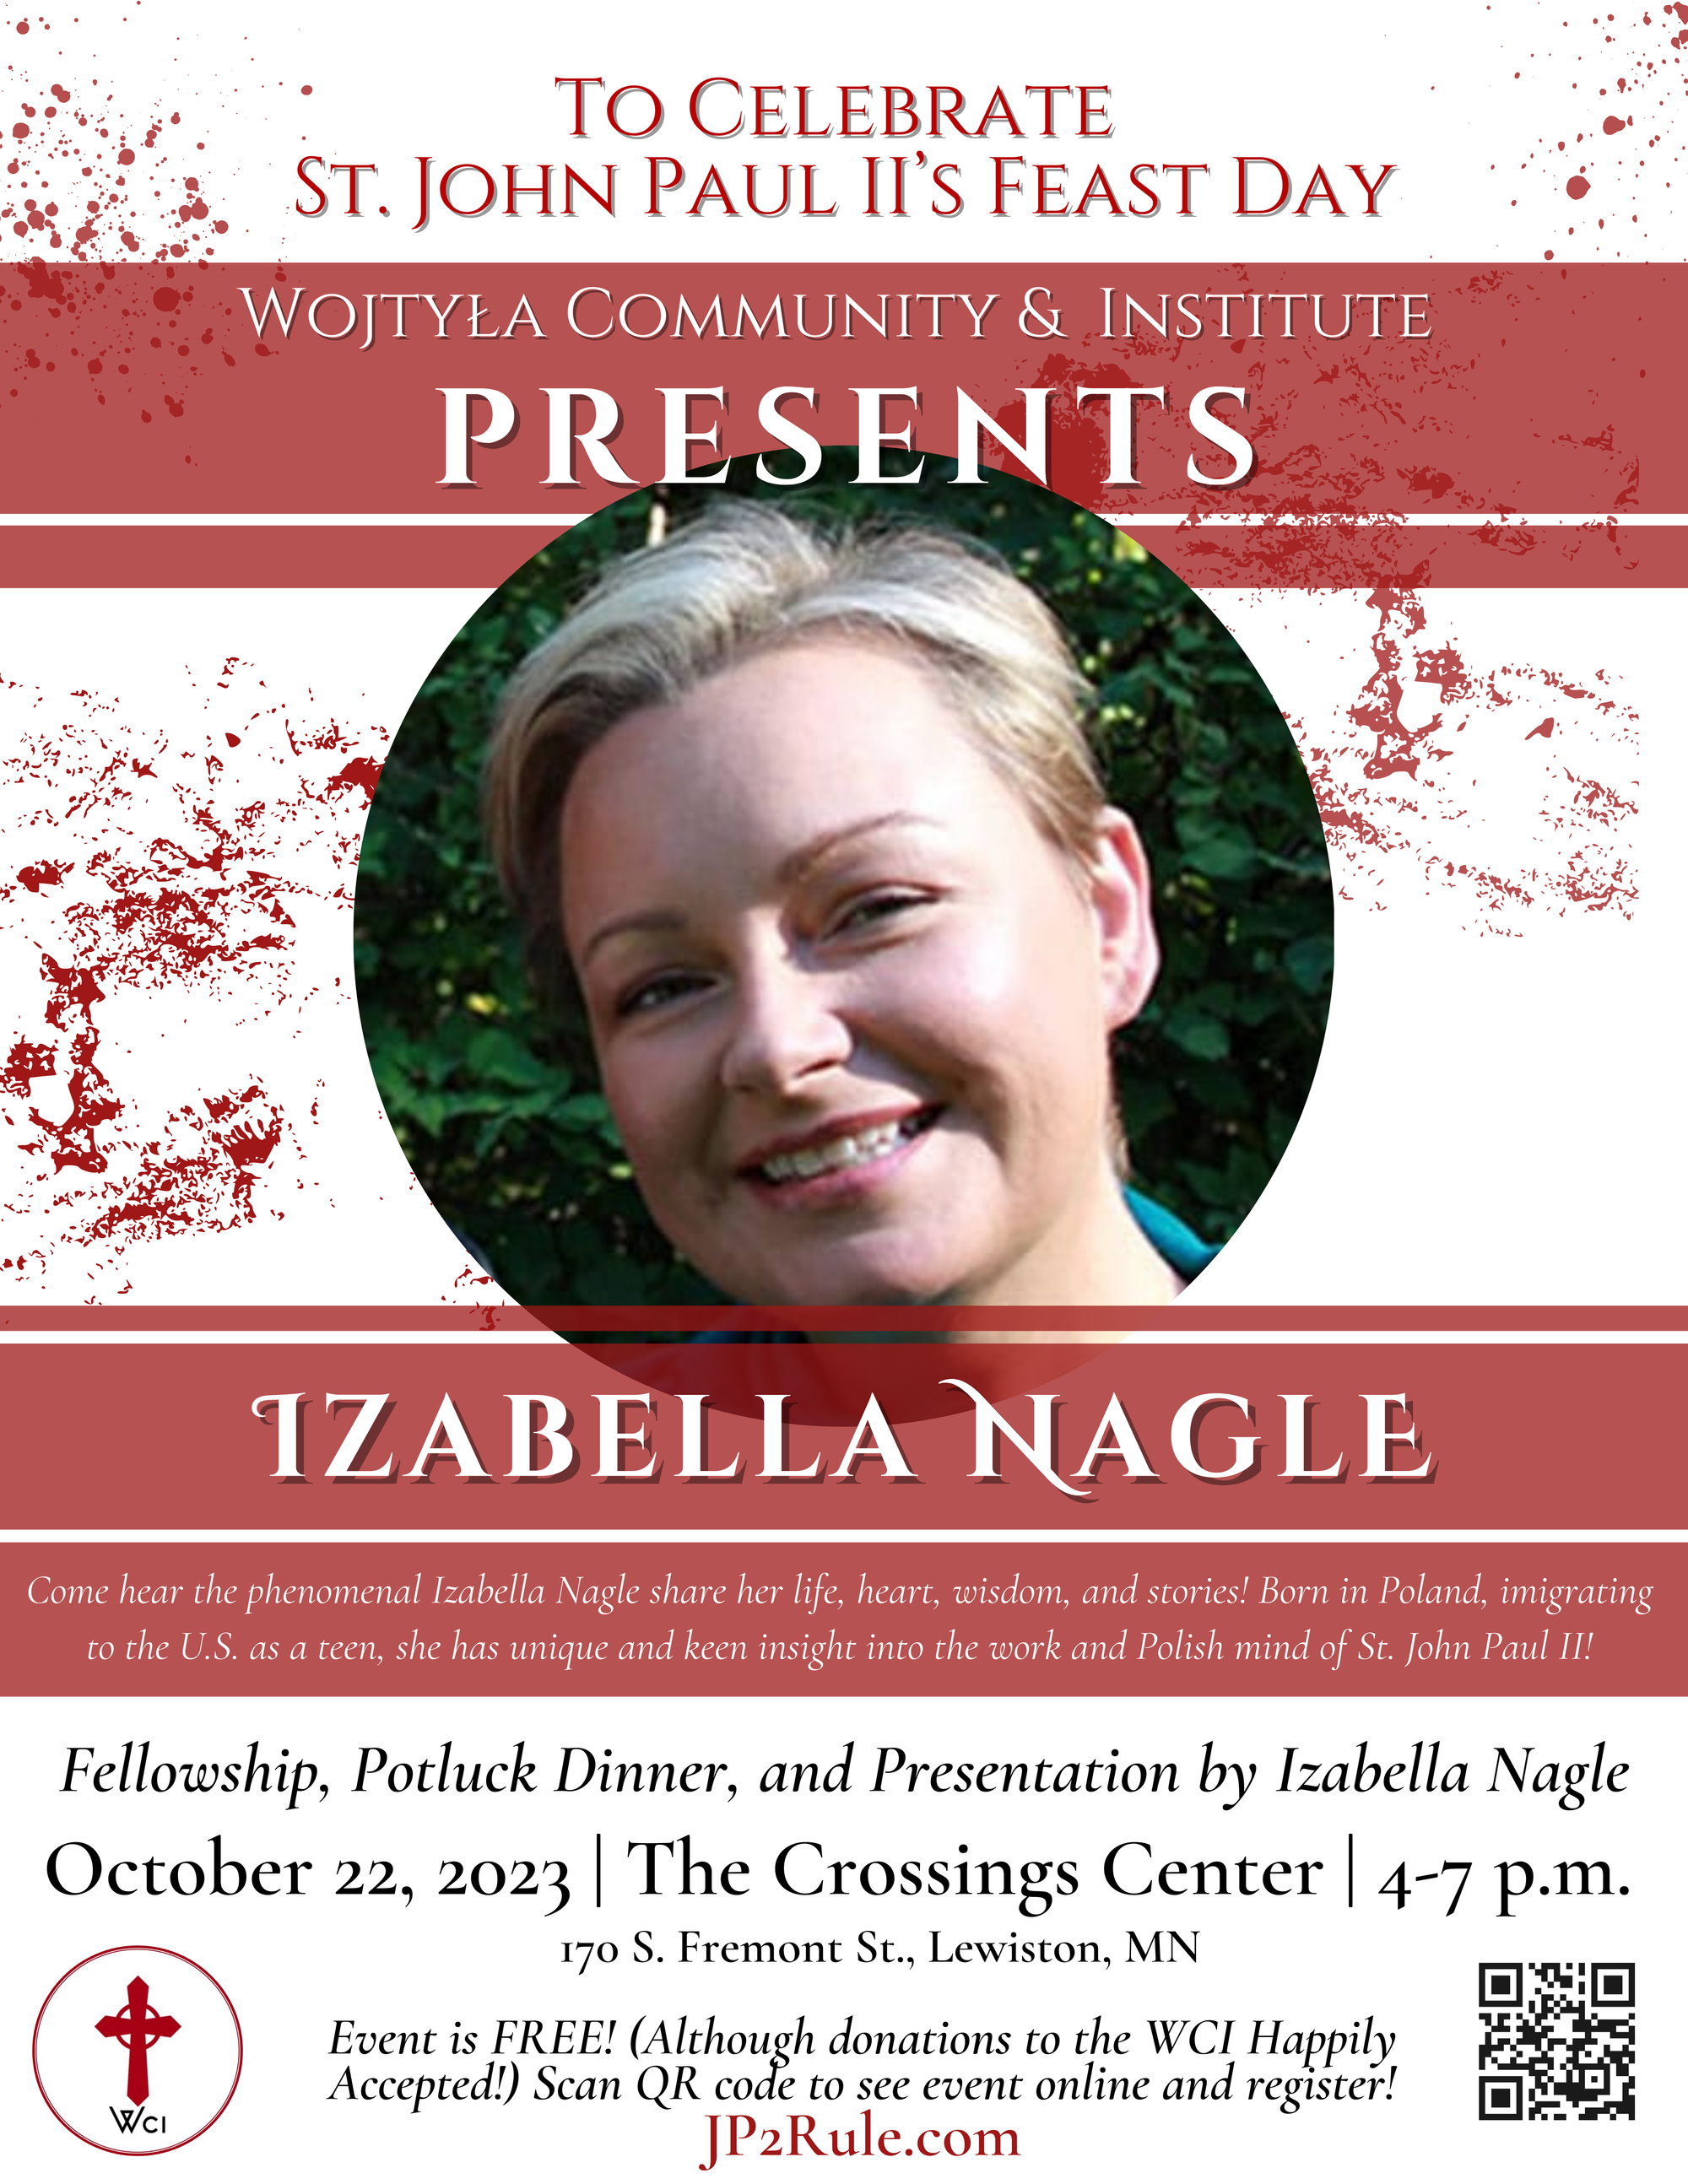 WCI PRESENTS: IZABELLA NAGLE!